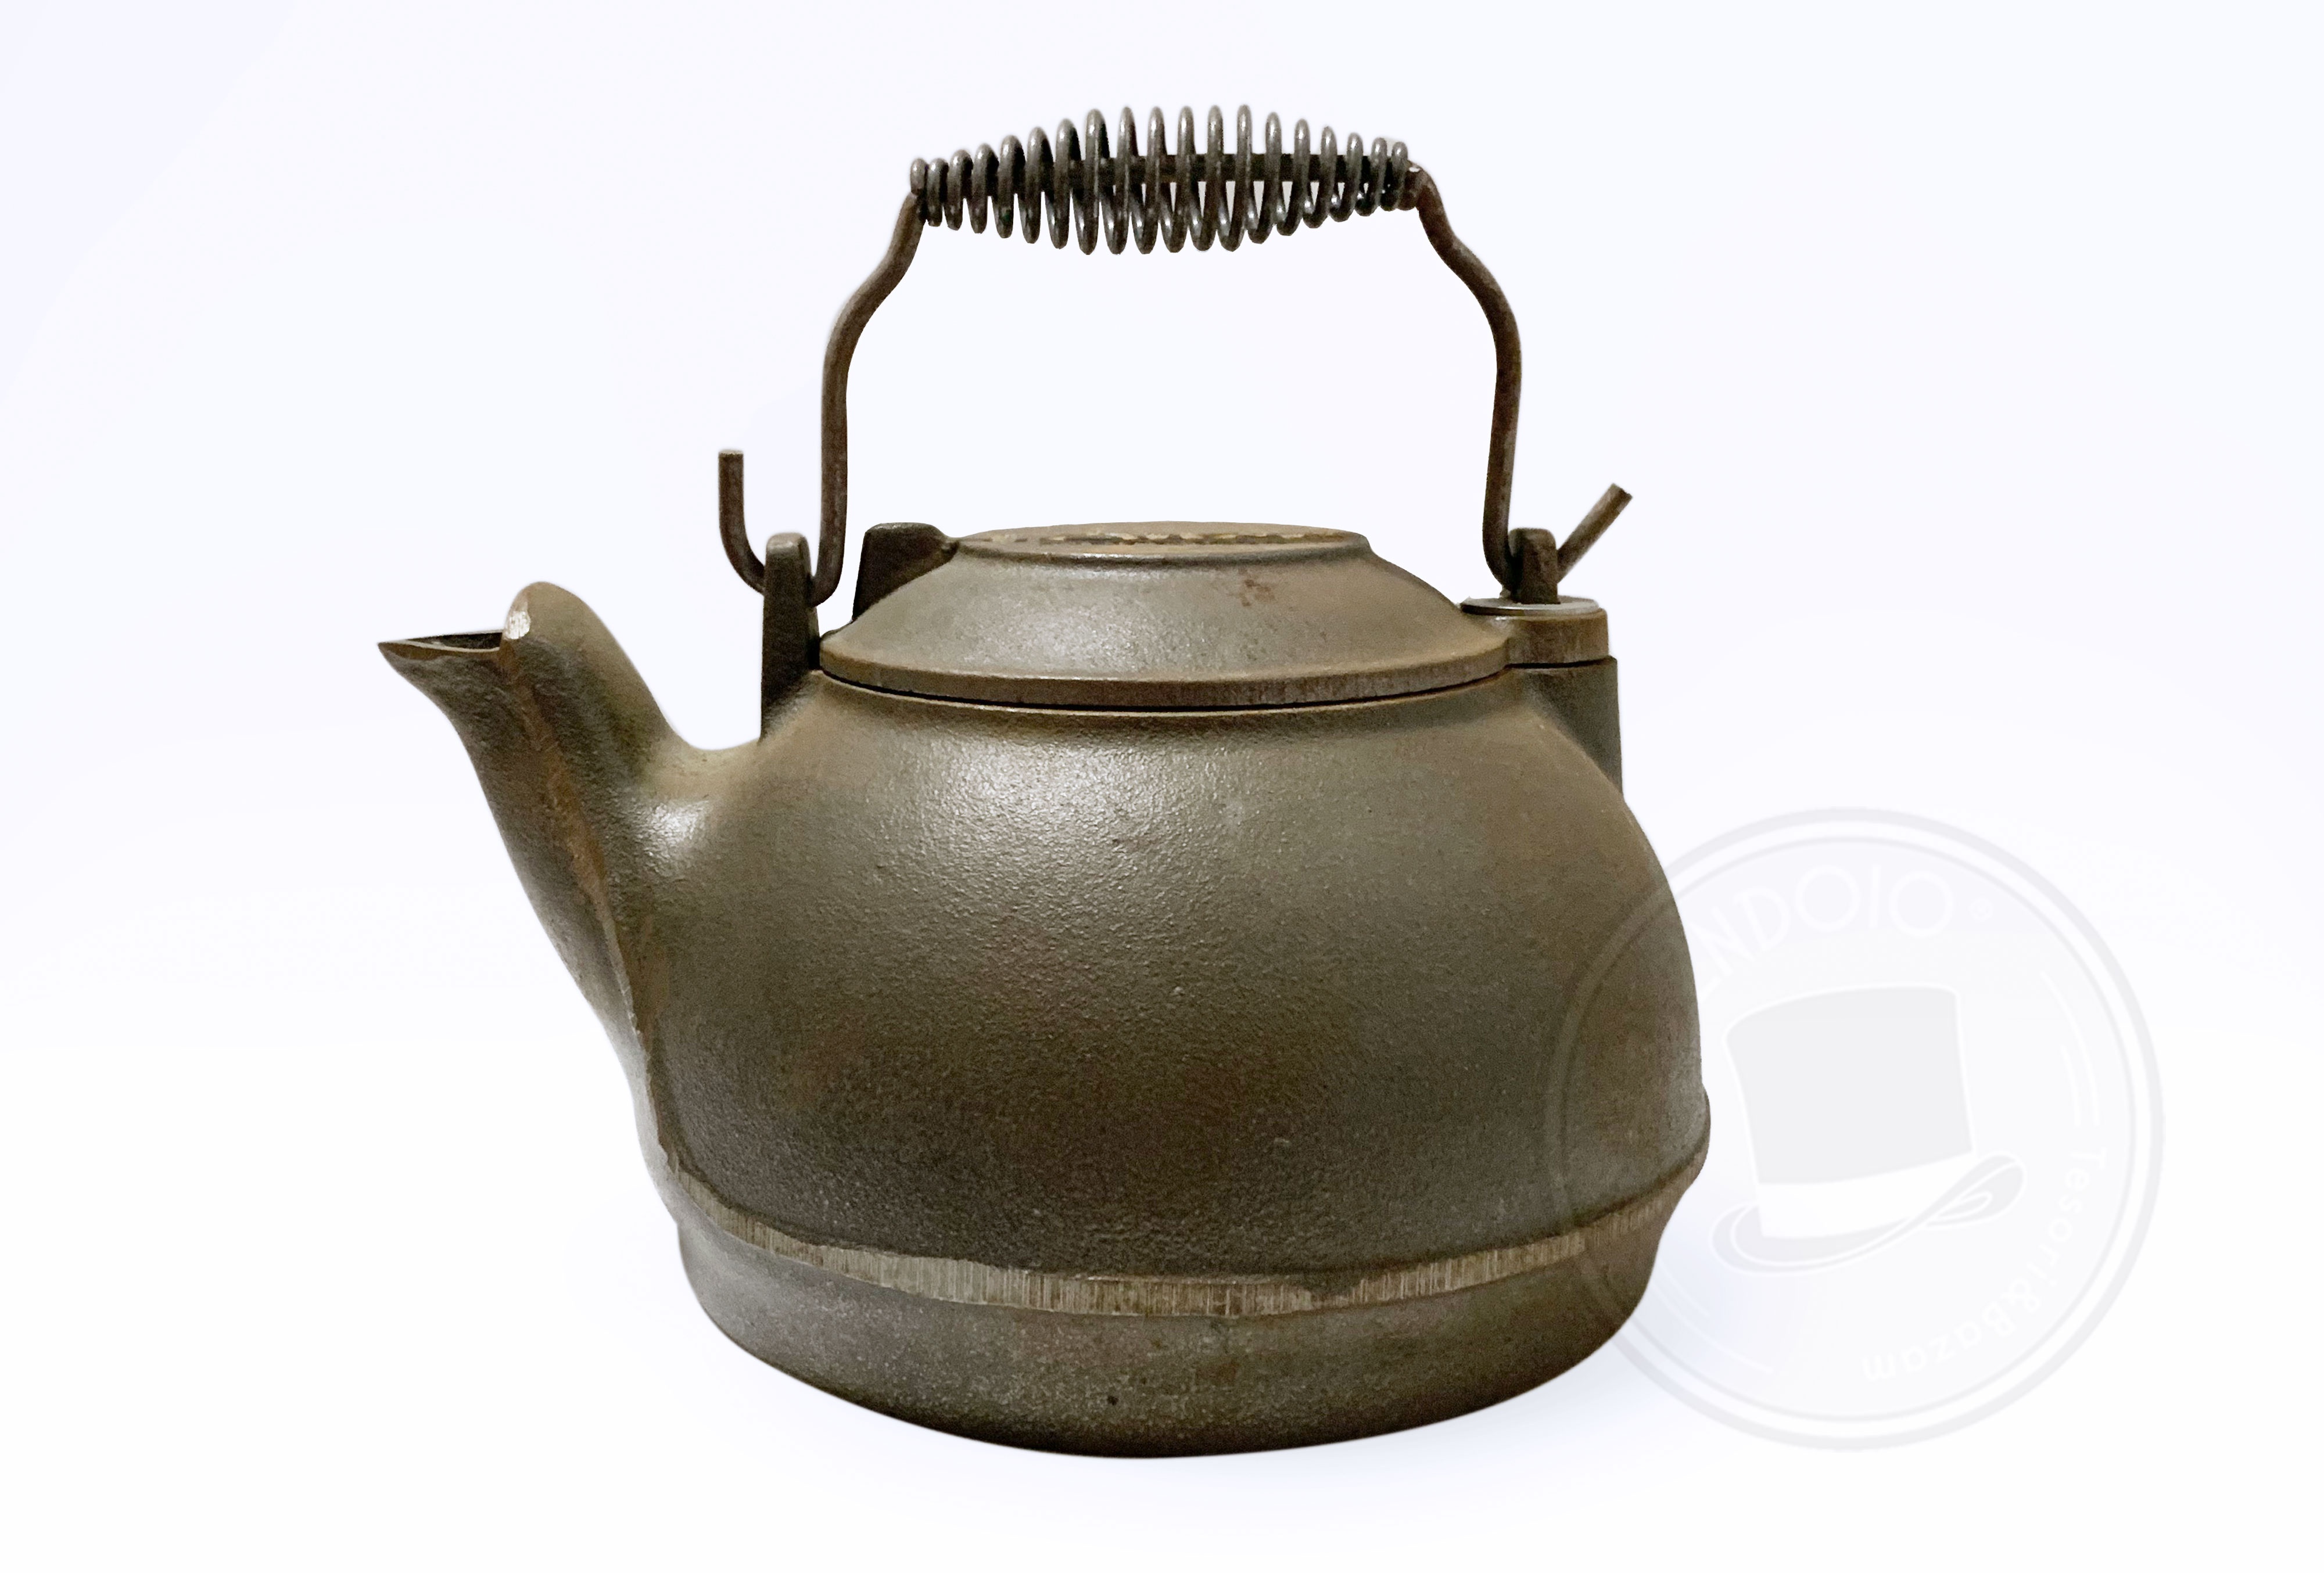 Bollitore per il tè in ghisa Lodge Cast Iron Tea Kettle - TELOVENDOIO